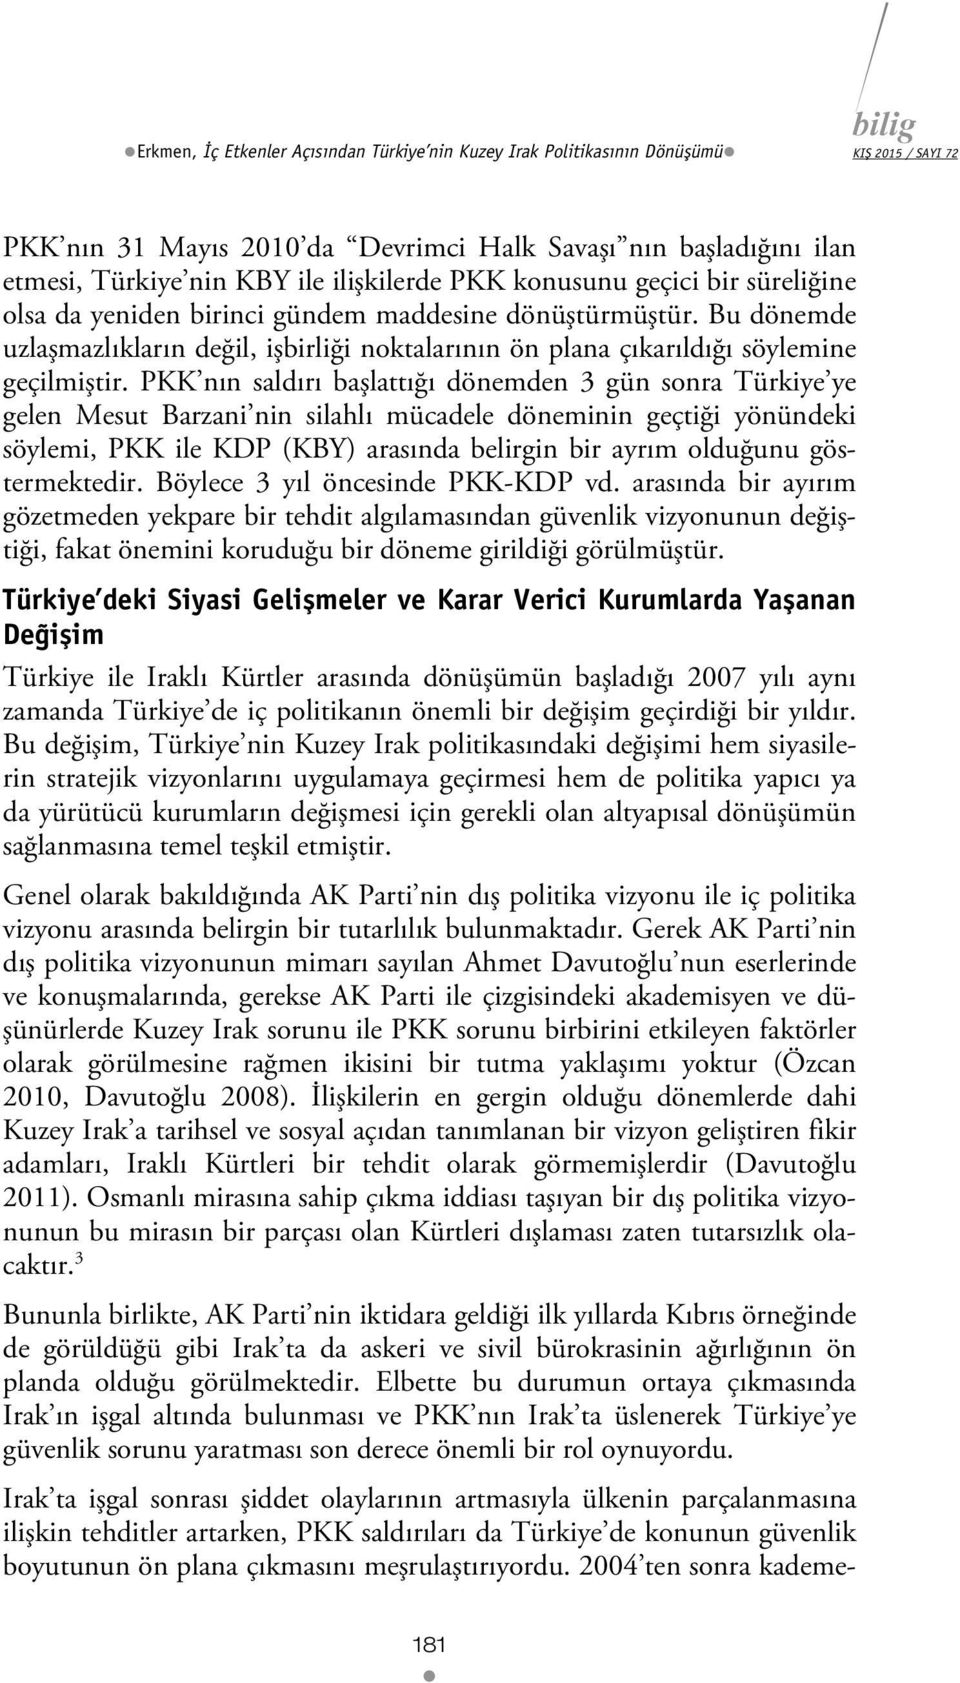 PKK nın saldırı başlattığı dönemden 3 gün sonra Türkiye ye gelen Mesut Barzani nin silahlı mücadele döneminin geçtiği yönündeki söylemi, PKK ile KDP (KBY) arasında belirgin bir ayrım olduğunu